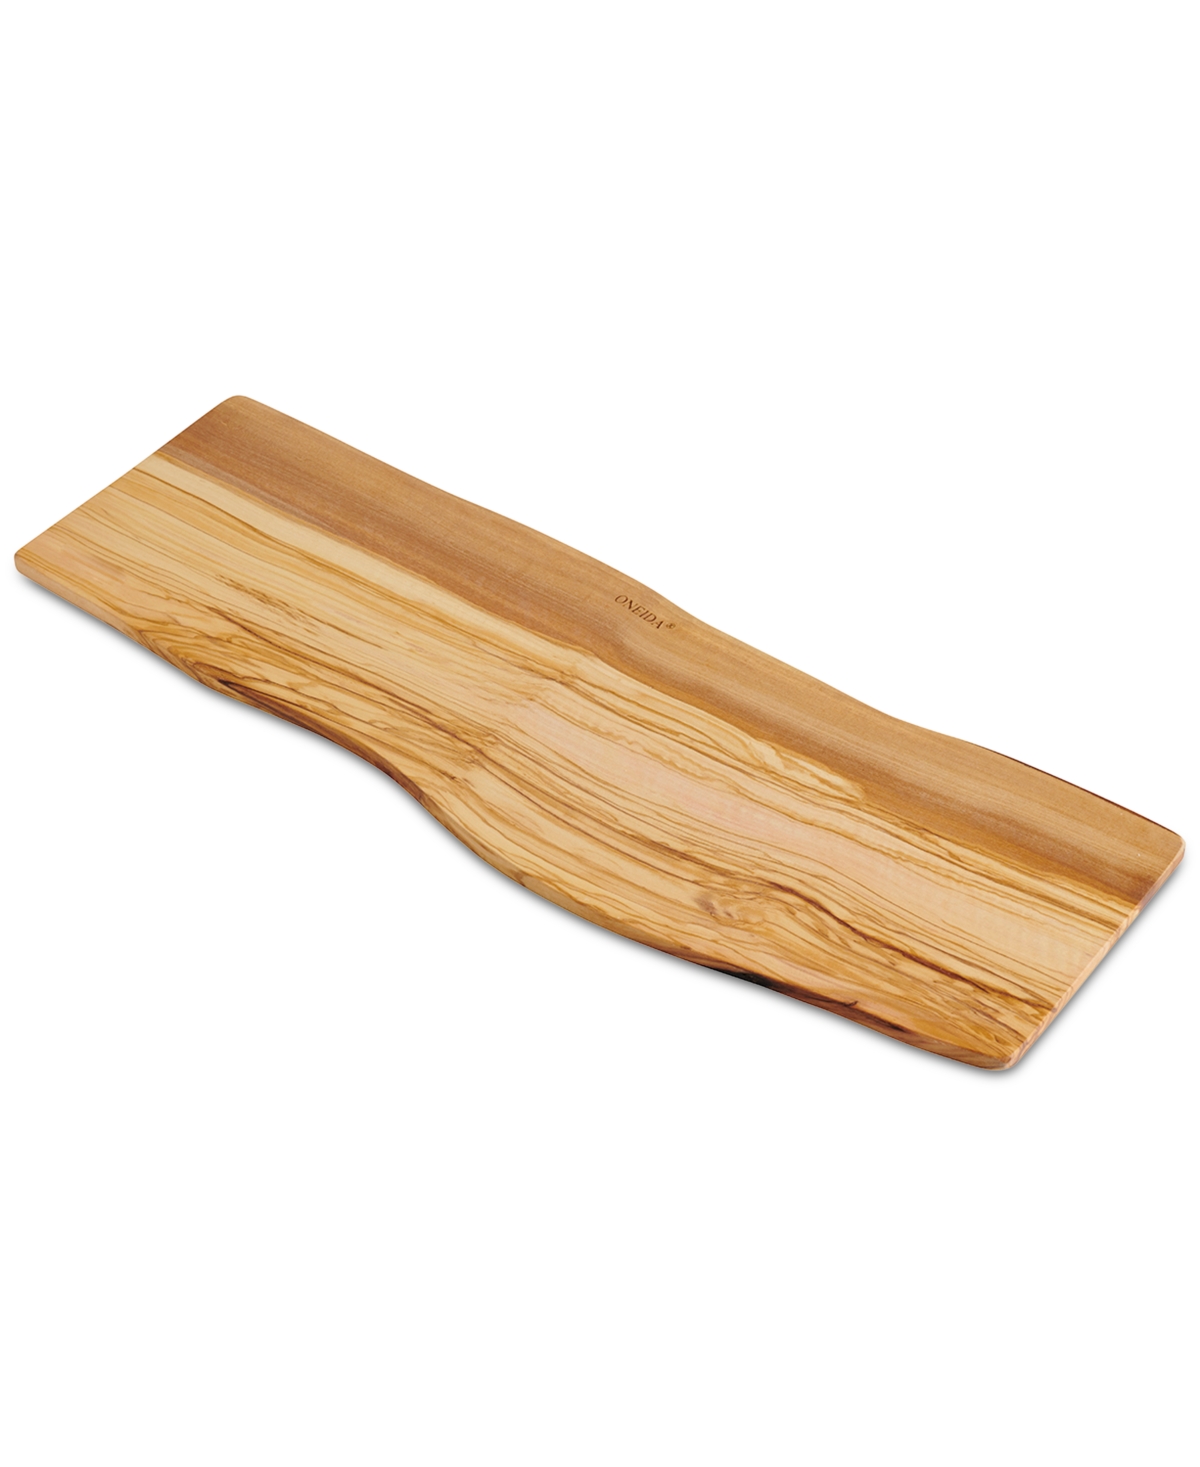 12658887 Oblong Large Olive Wood Board with Natural Bark Ed sku 12658887